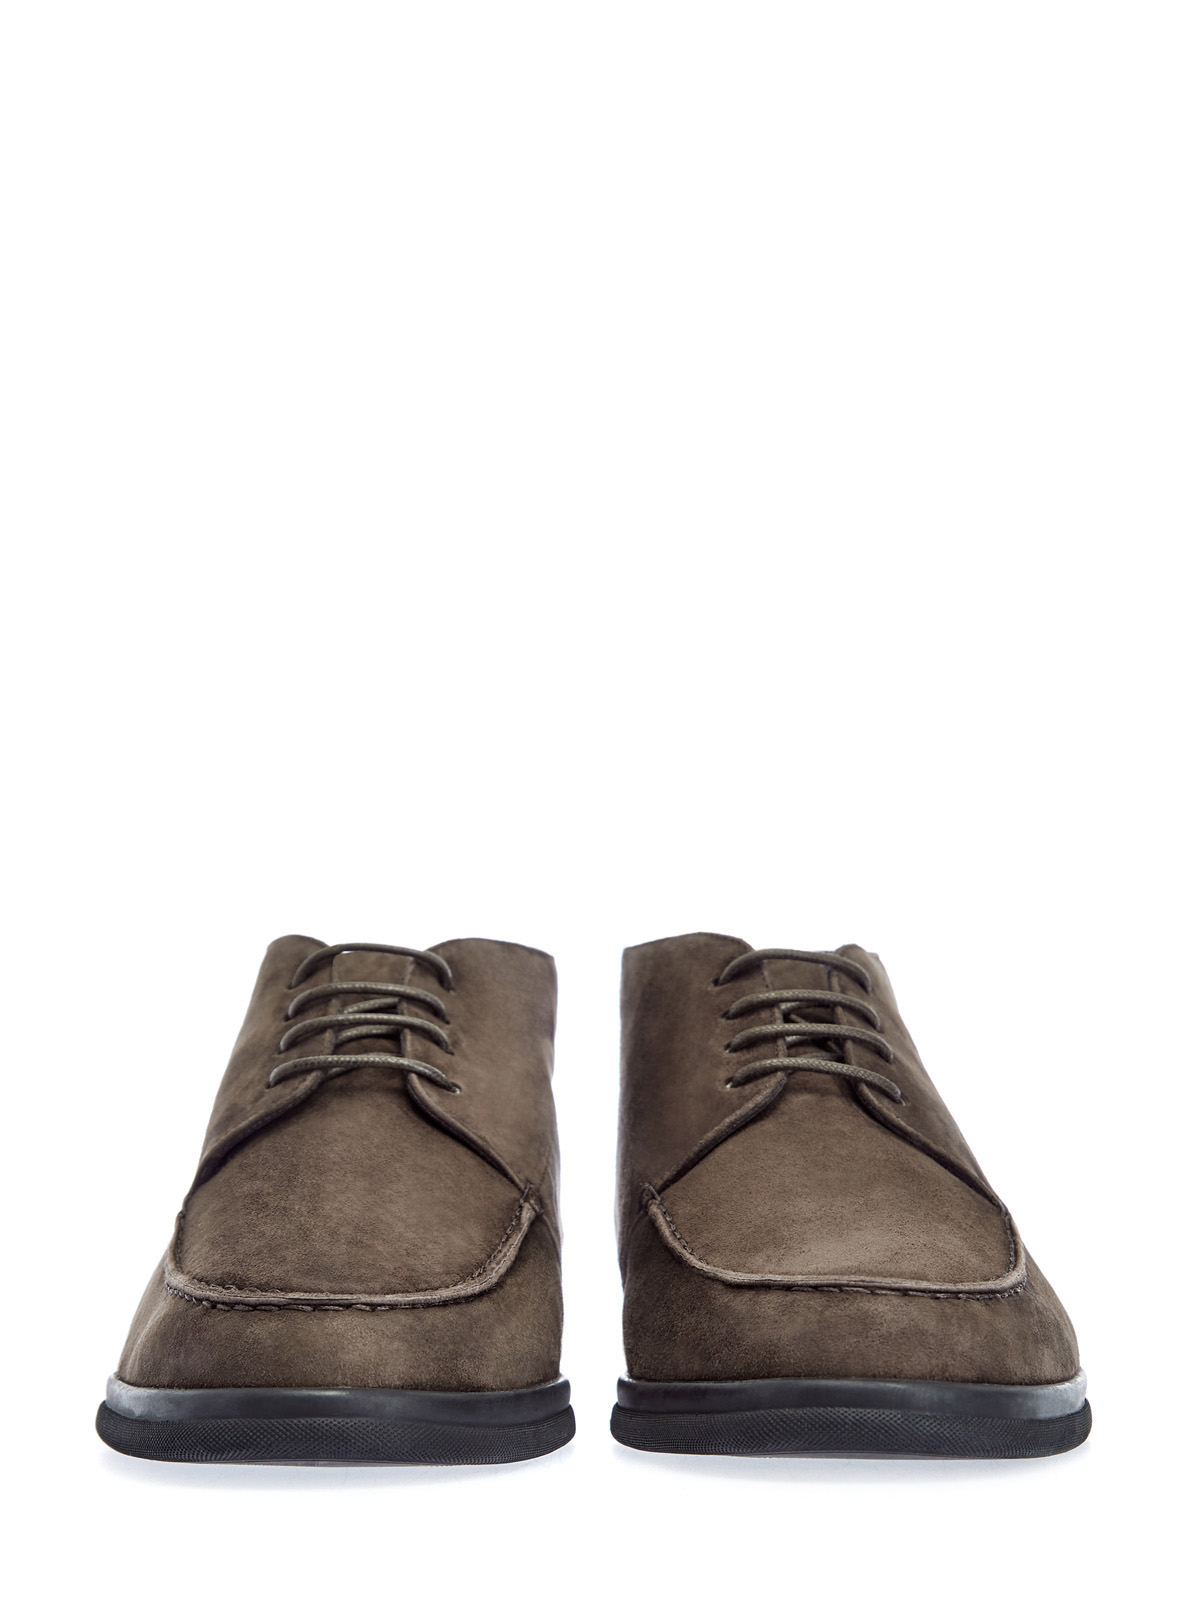 Замшевые ботинки-дерби на подкладке из овчины CANALI, цвет коричневый, размер 41;41.5;42;42.5;43;43.5;44 - фото 6